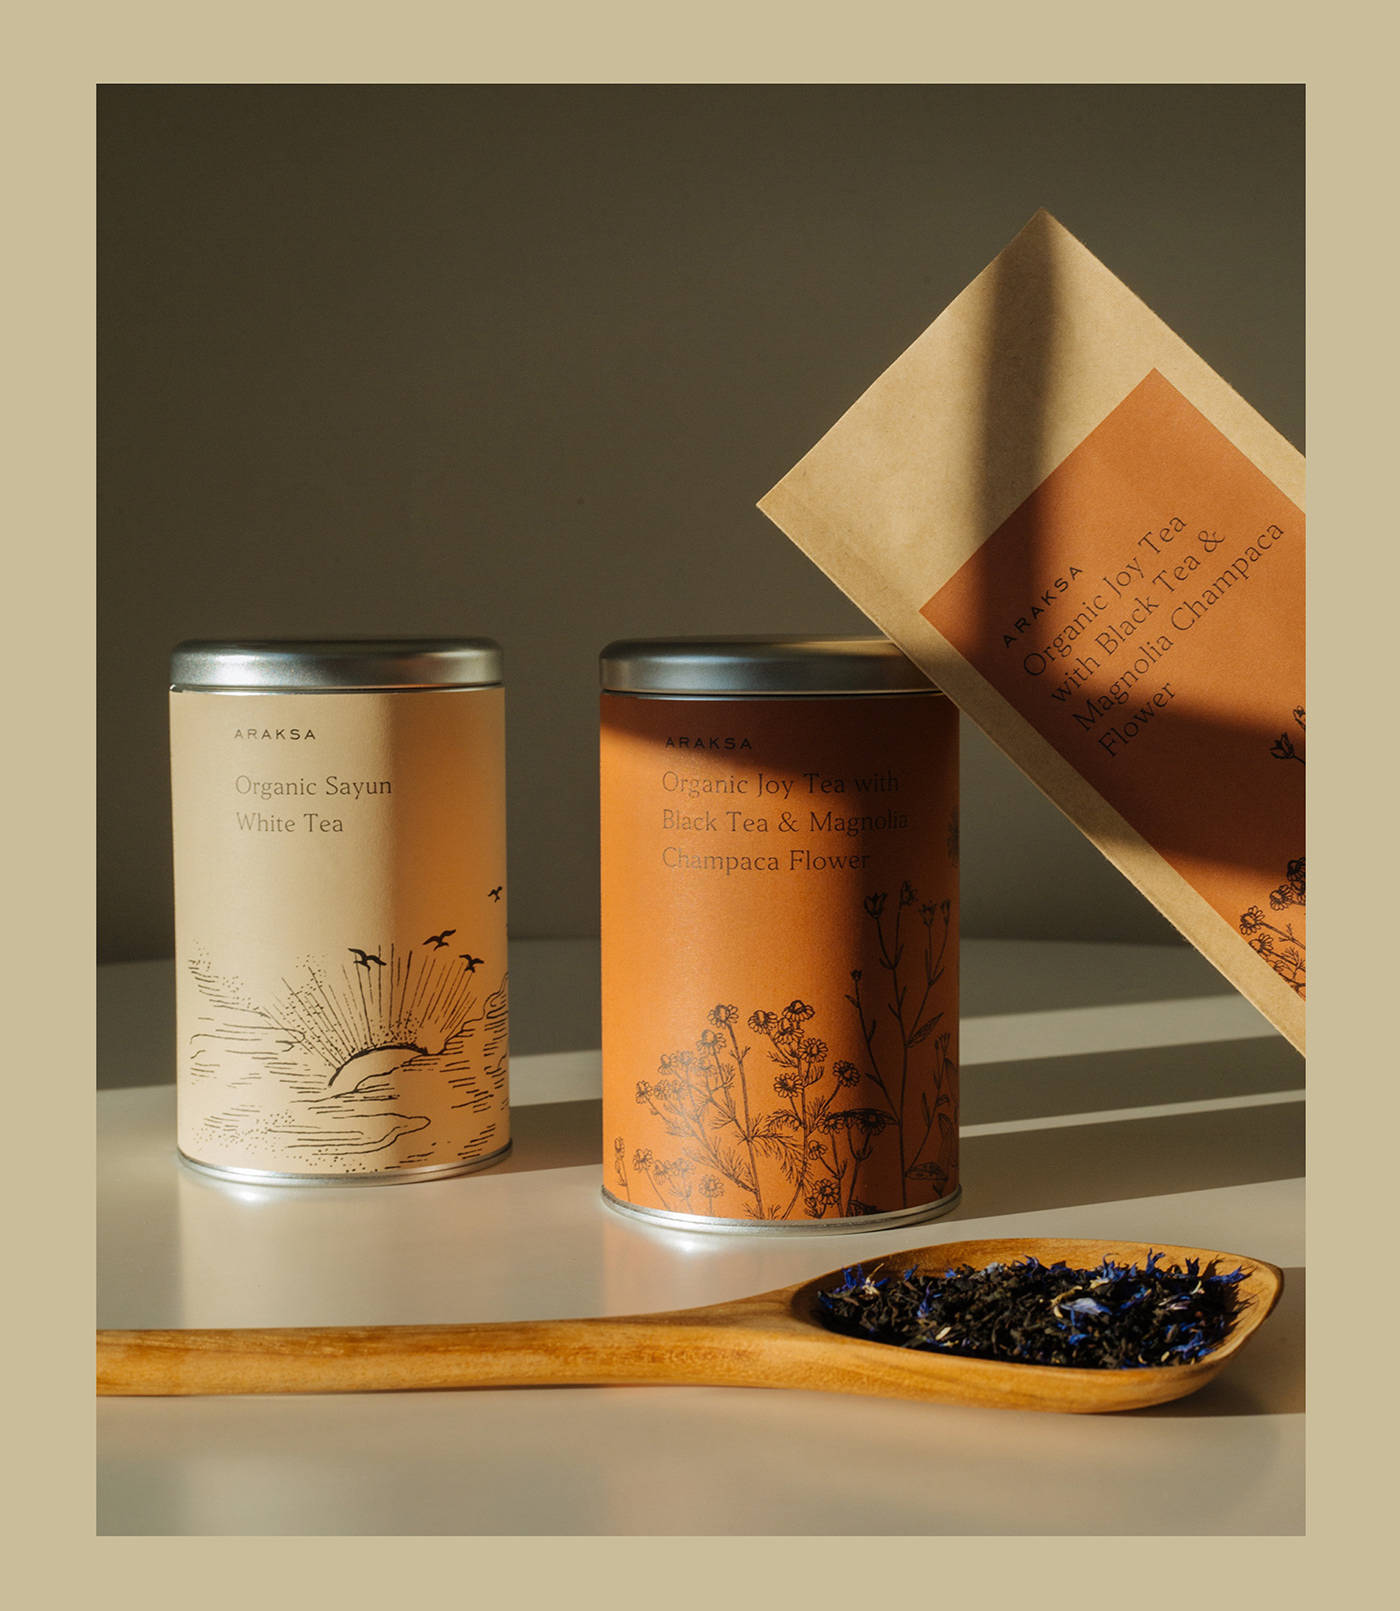 日本茶叶包装设计欣赏图片